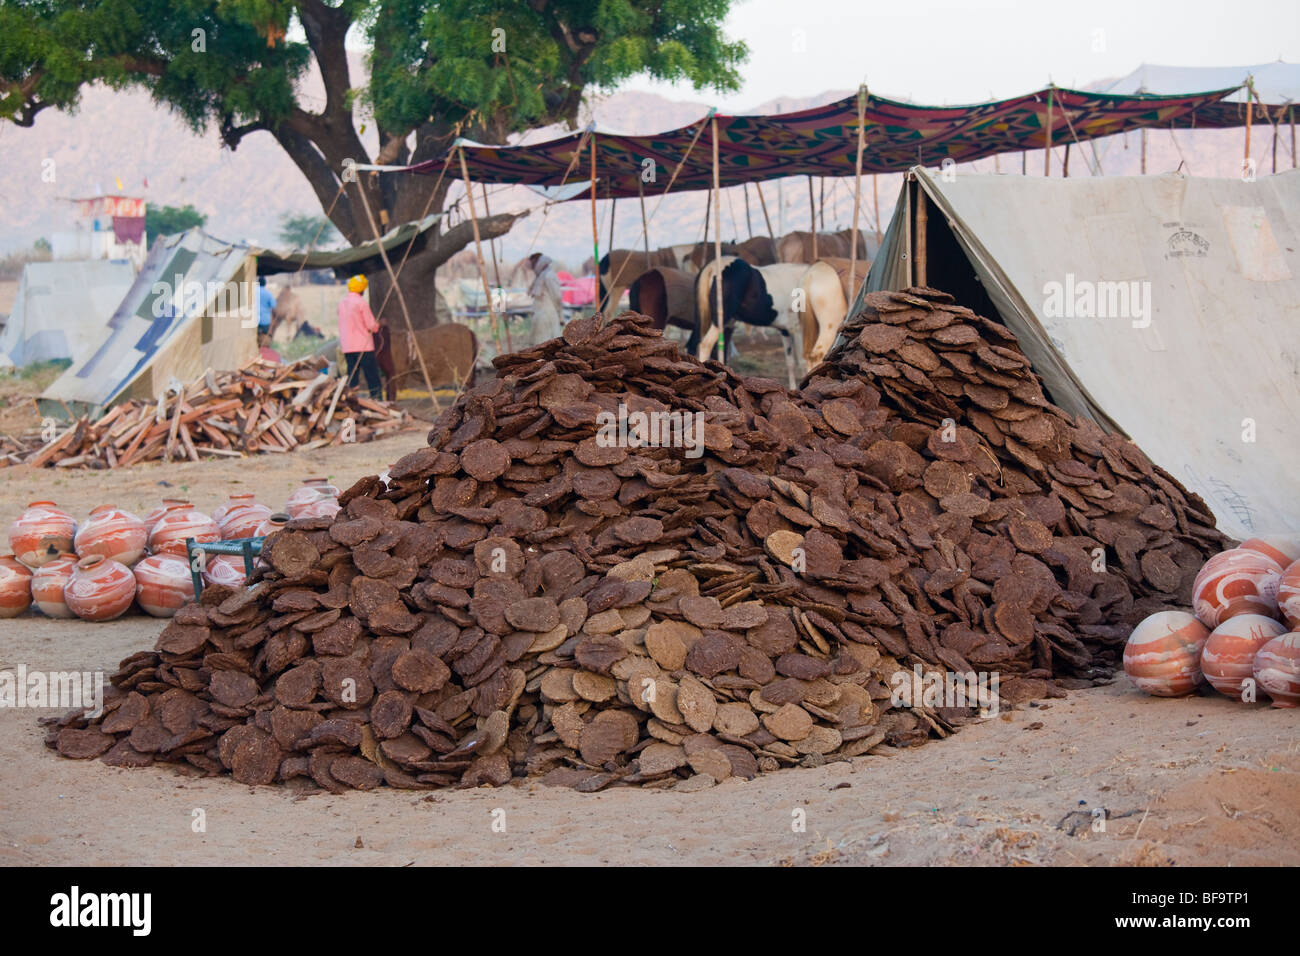 Sterco di cammello come biocarburante al Camel Fair in Pushkar India Foto Stock